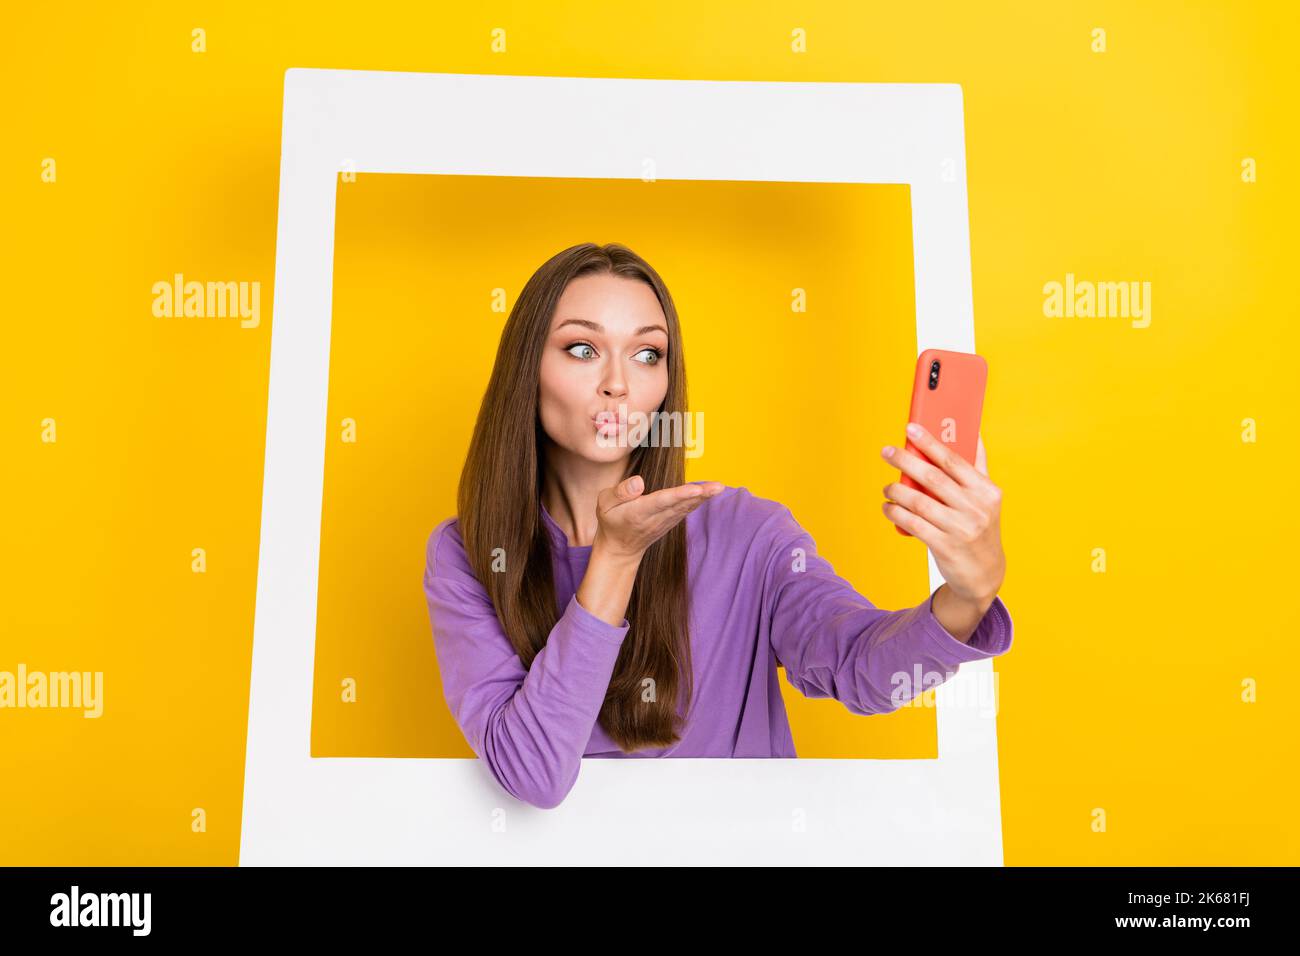 Nahaufnahme Porträt Foto von jungen aufgeregt positive Frau nehmen Schuss Fotografie Selfie Kamera senden Luft Kuss Rahmen Berühmtheit isoliert auf hellgelb Stockfoto